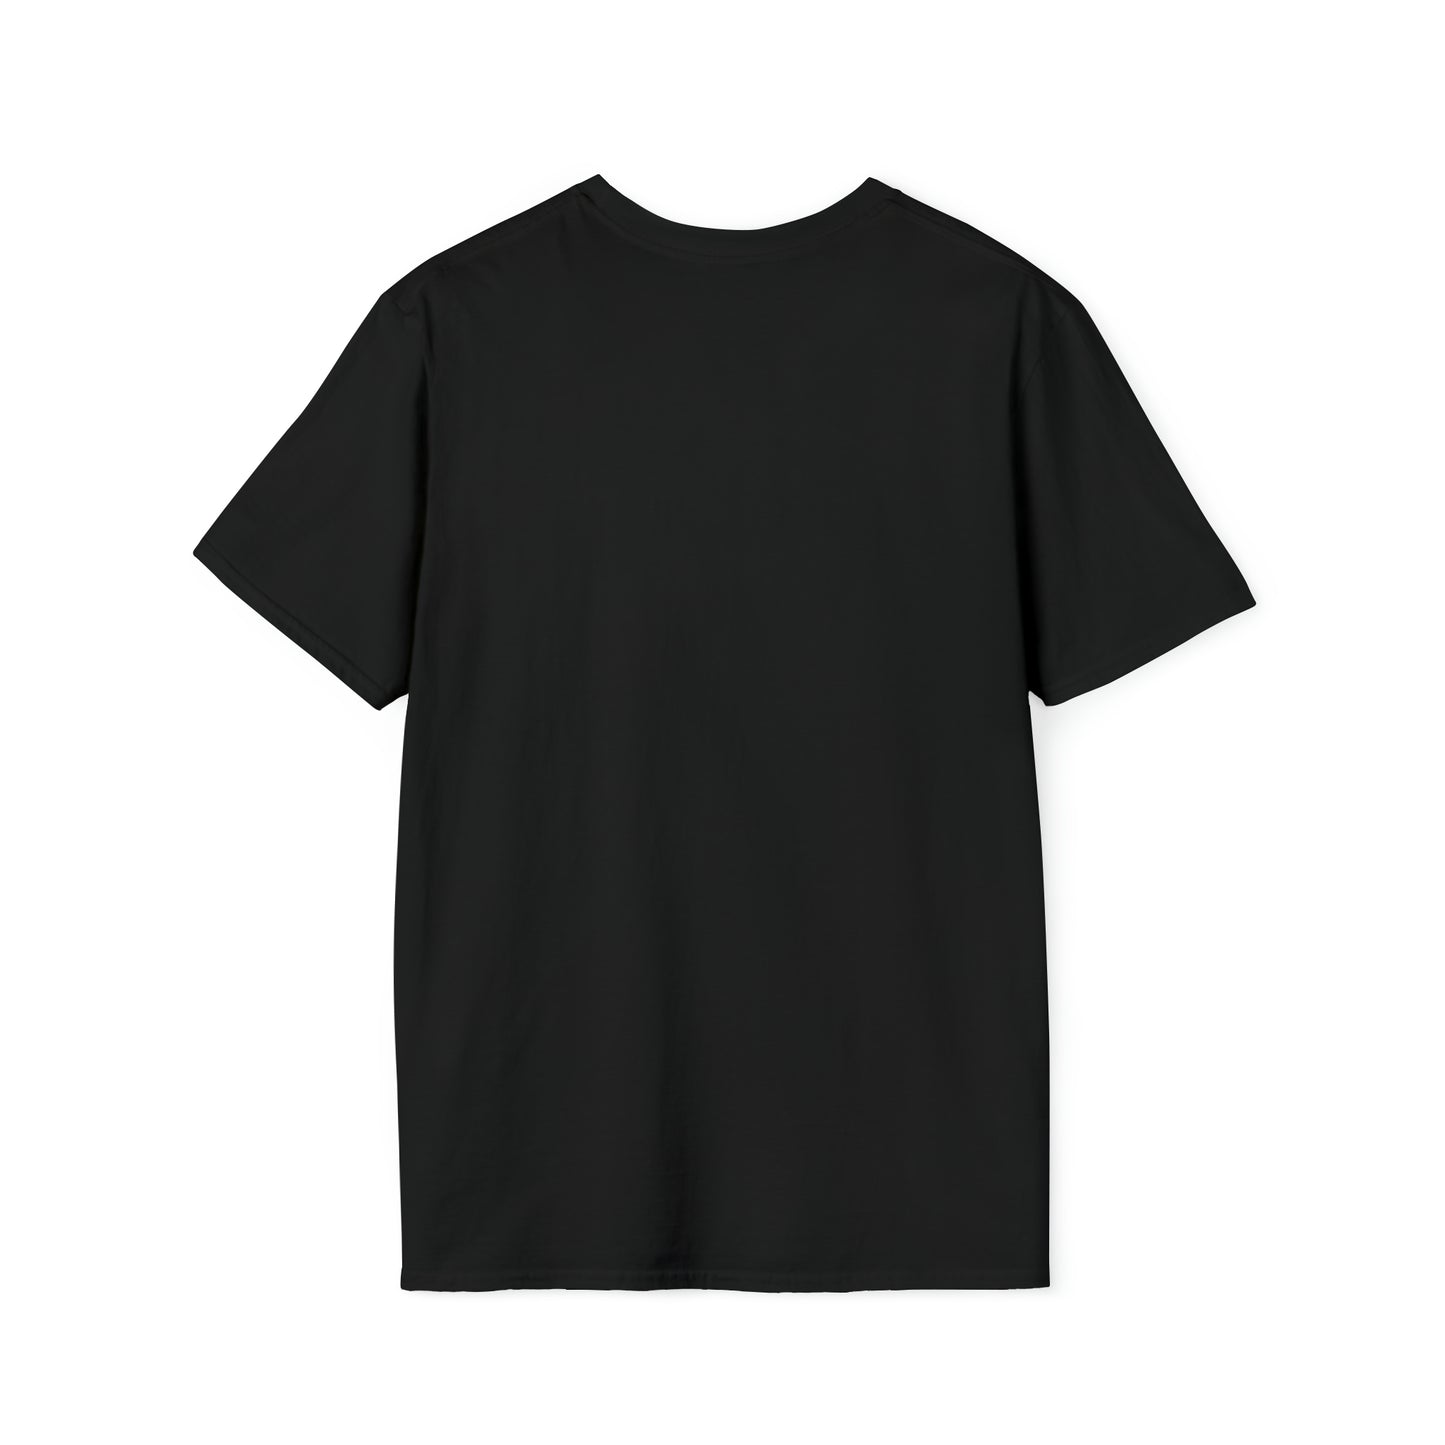 T-shirt regular zwart - de Kuip - Overal waar jij gaat - logo voor groot